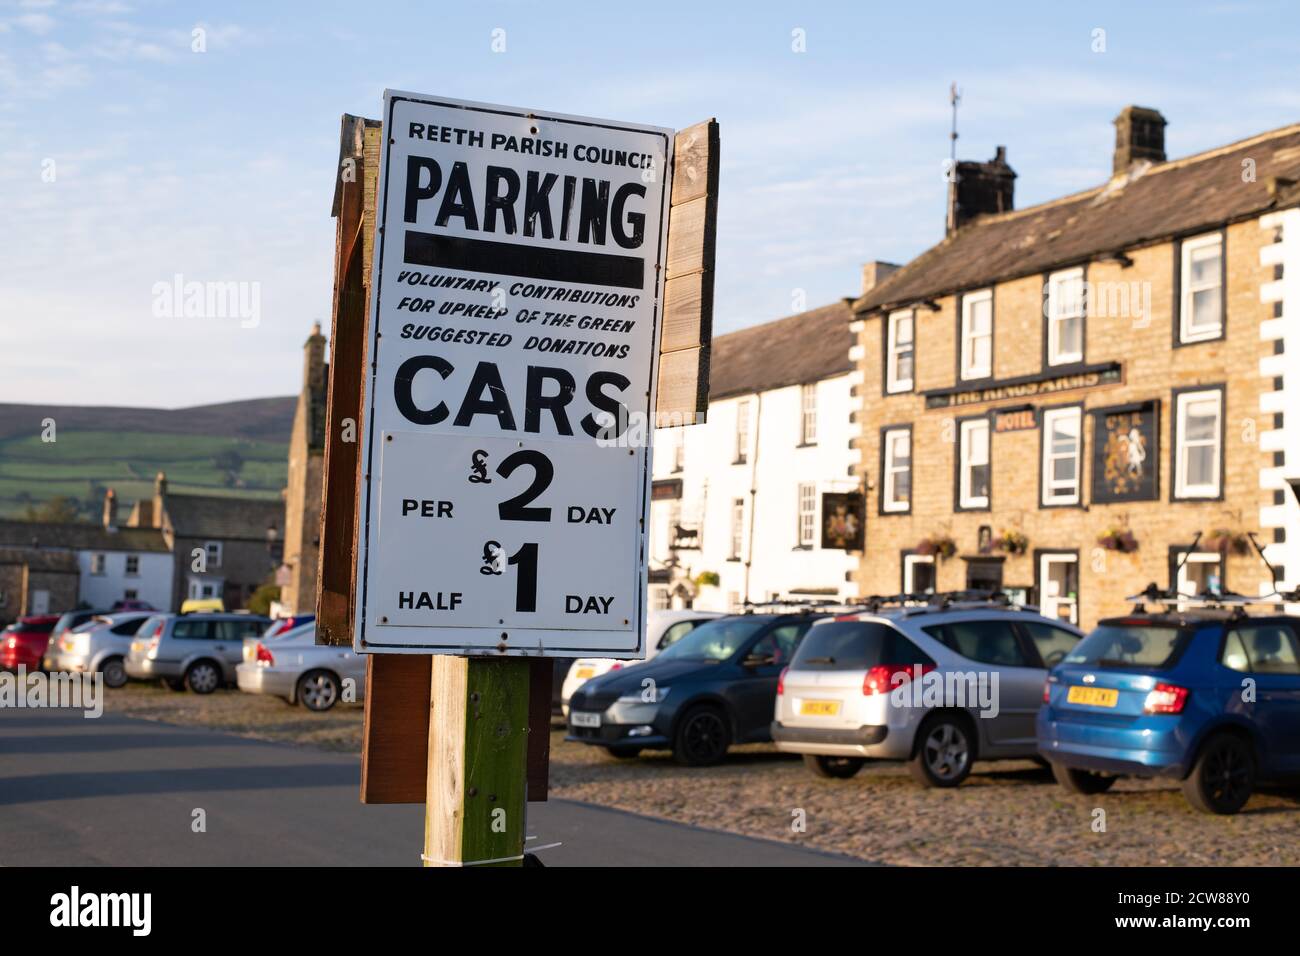 Voitures et panneau de parking demandant un paiement volontaire pour aider à l'entretien des Green, Reeth, Swaledale, Angleterre, Royaume-Uni Banque D'Images